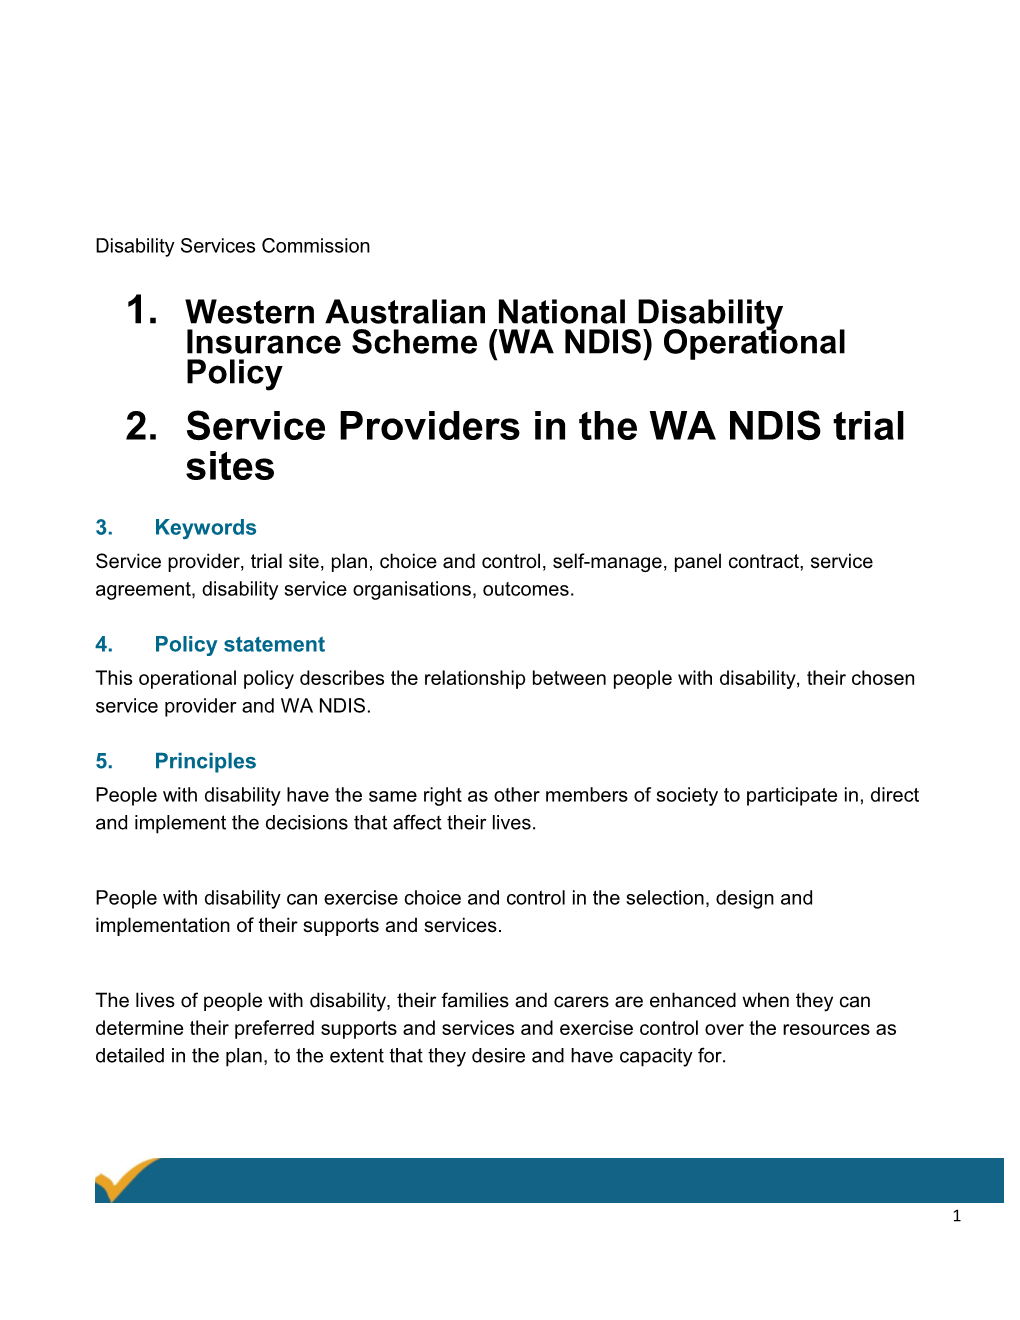 Western Australian National Disability Insurance Scheme (WA NDIS) Operational Policy